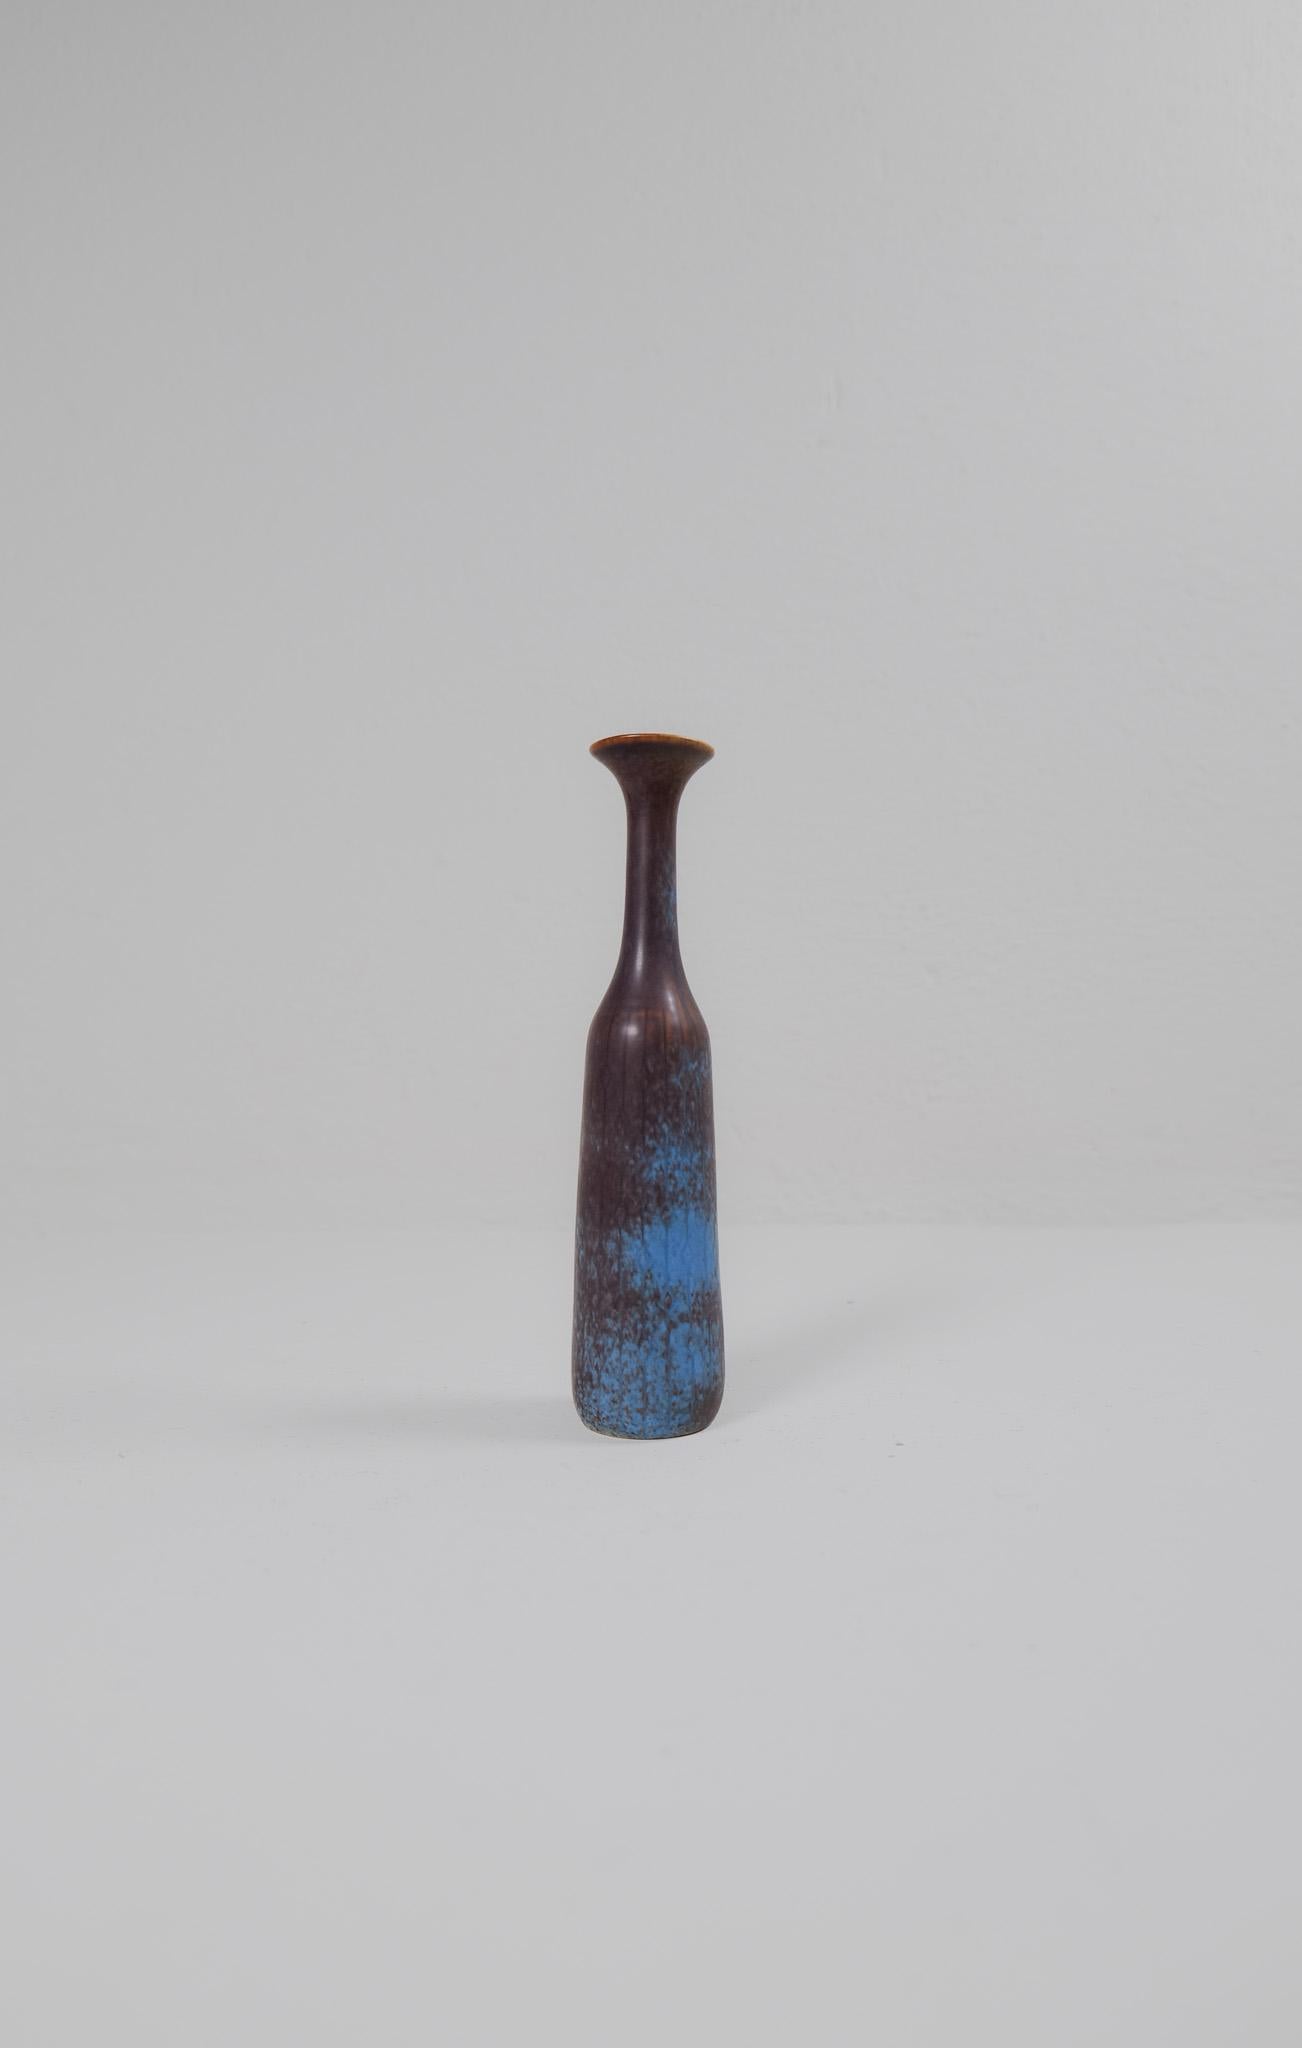 Diese wunderbare Vase wurde von Gunnar Nylund in der Rörstrand-Fabrik in den 1950er Jahren in Schweden entworfen und gestaltet. 

Das Pfauenmuster verleiht der unglaublichen Glasur ein schönes Leben.

Sehr guter Zustand.

Abmessungen: H 26 cm, D